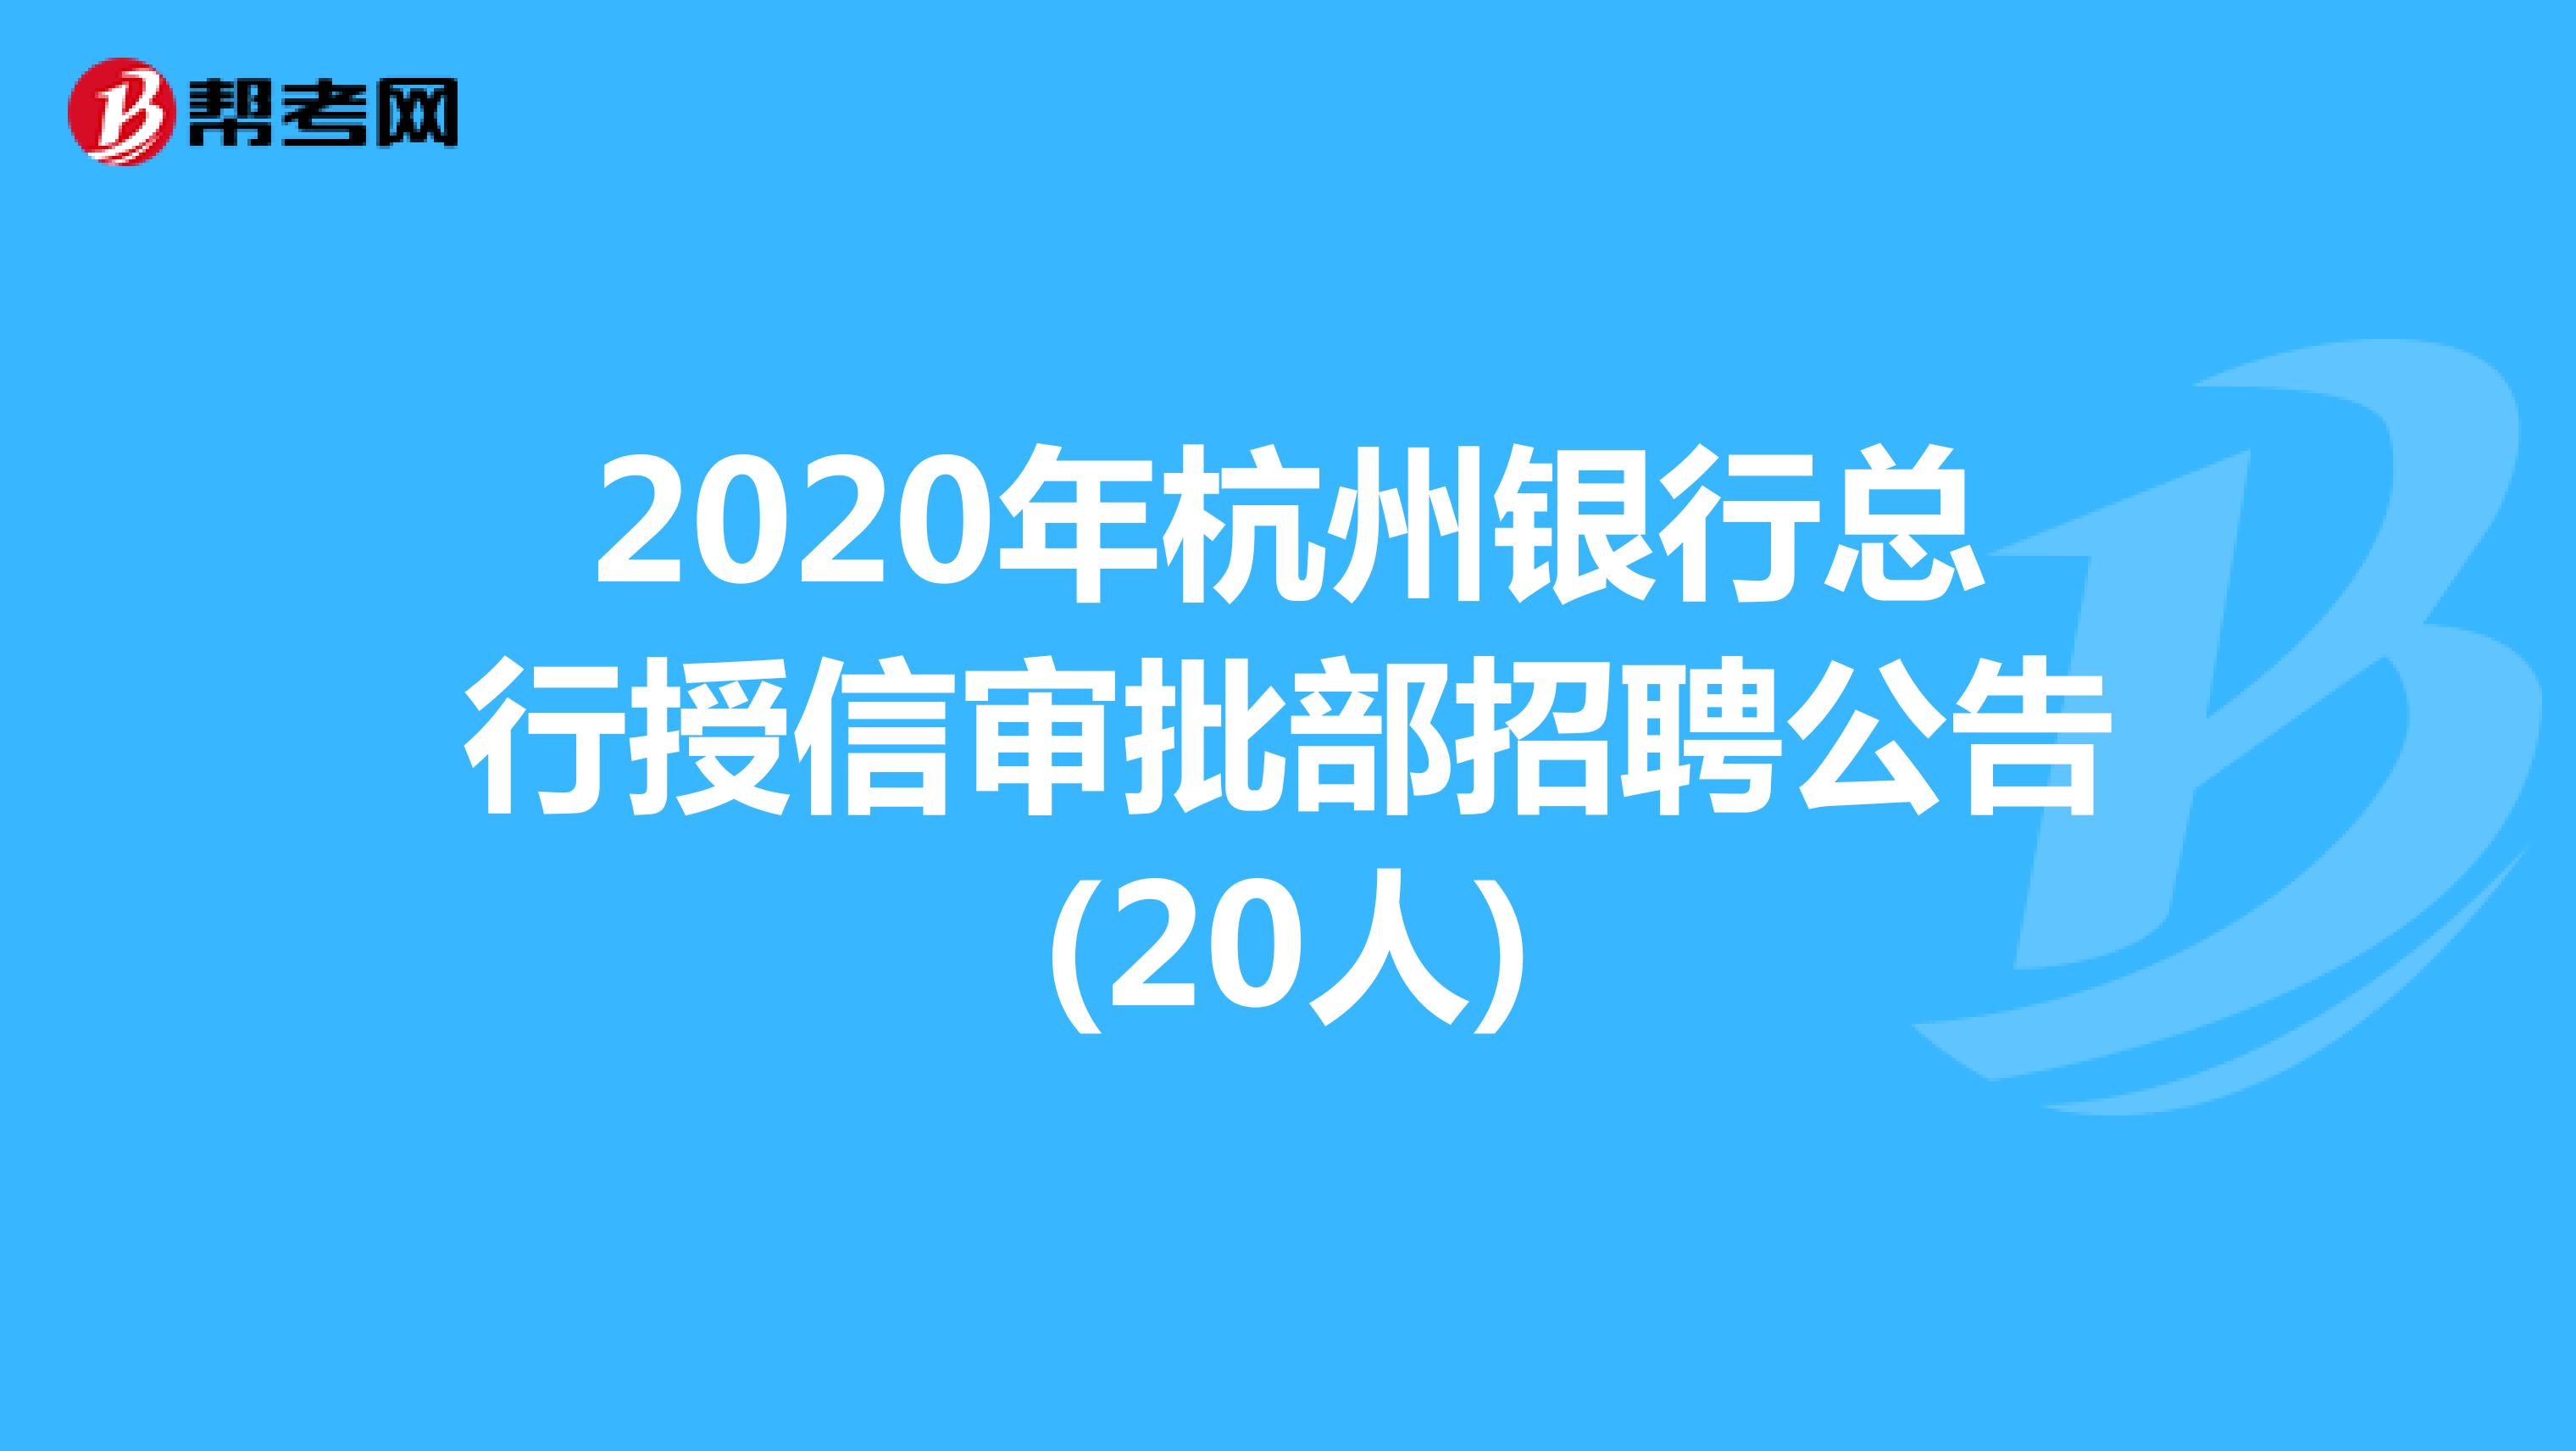 2020年杭州银行总行授信审批部招聘公告(20人)